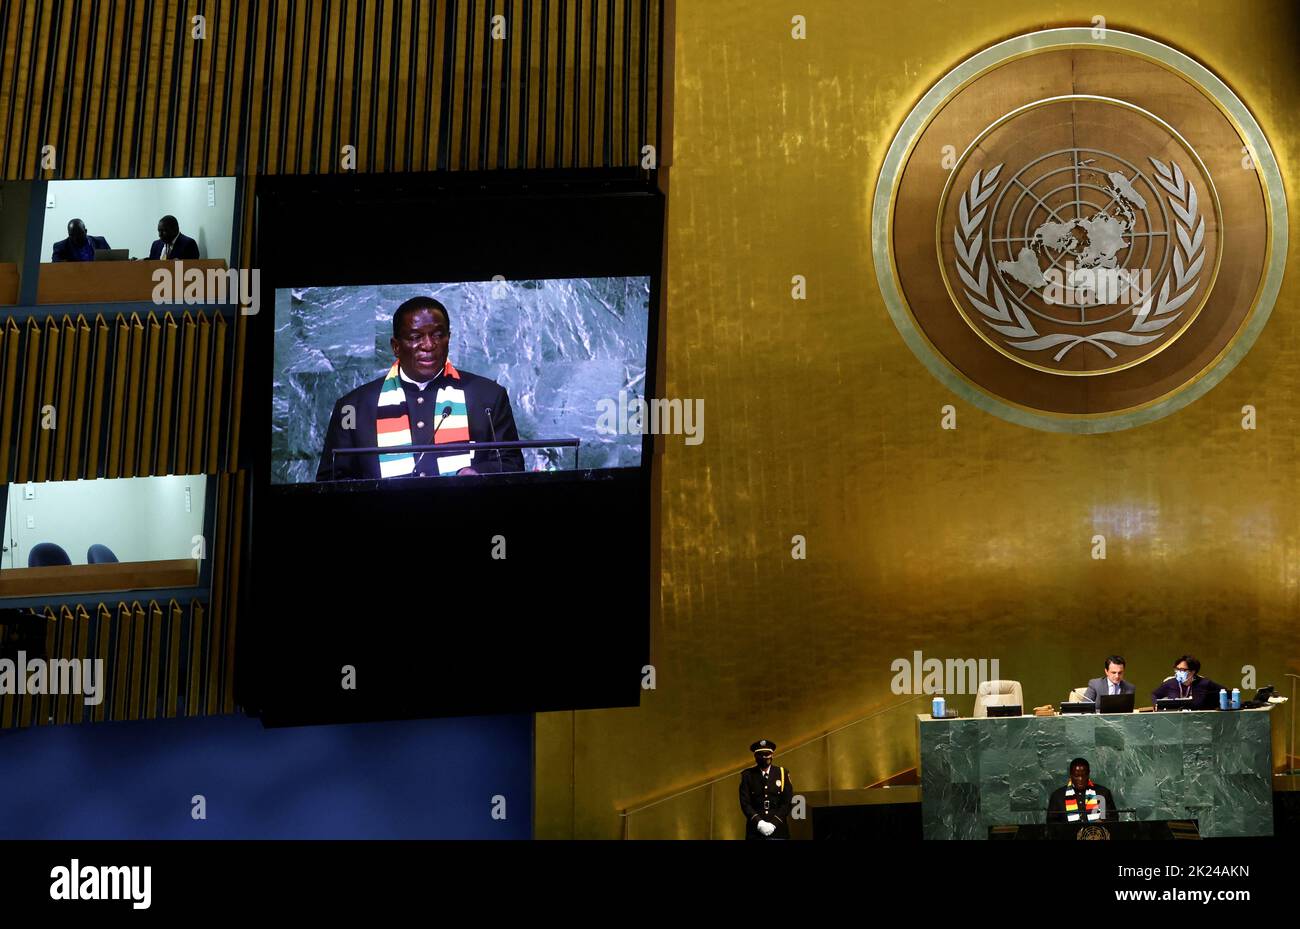 Le président du Zimbabwe Emmerson Dambudzo Mnangagwa est photographié sur un écran vidéo lorsqu'il s'adresse à la session de 77th de l'Assemblée générale des Nations Unies au siège de l'ONU à New York, aux États-Unis, au 22 septembre 2022. REUTERS/Mike Segar Banque D'Images